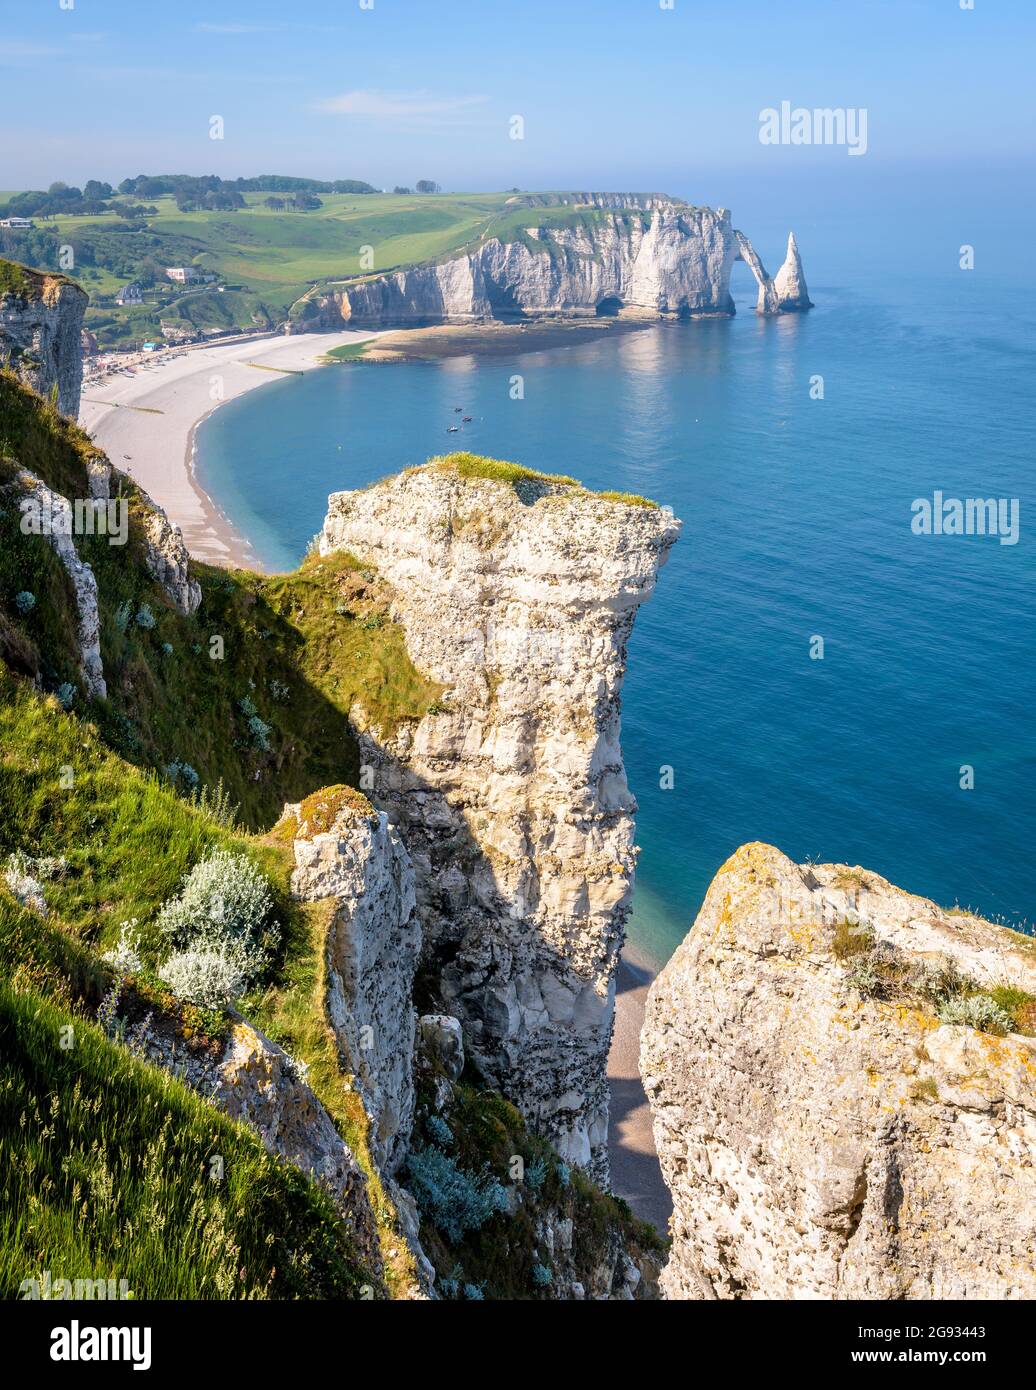 Der Strand und die Aval-Klippe in Etretat, Normandie, mit dem Bogen und der Nadel von der Amont-Klippe aus gesehen, mit Kreidepitonen im Vordergrund. Stockfoto